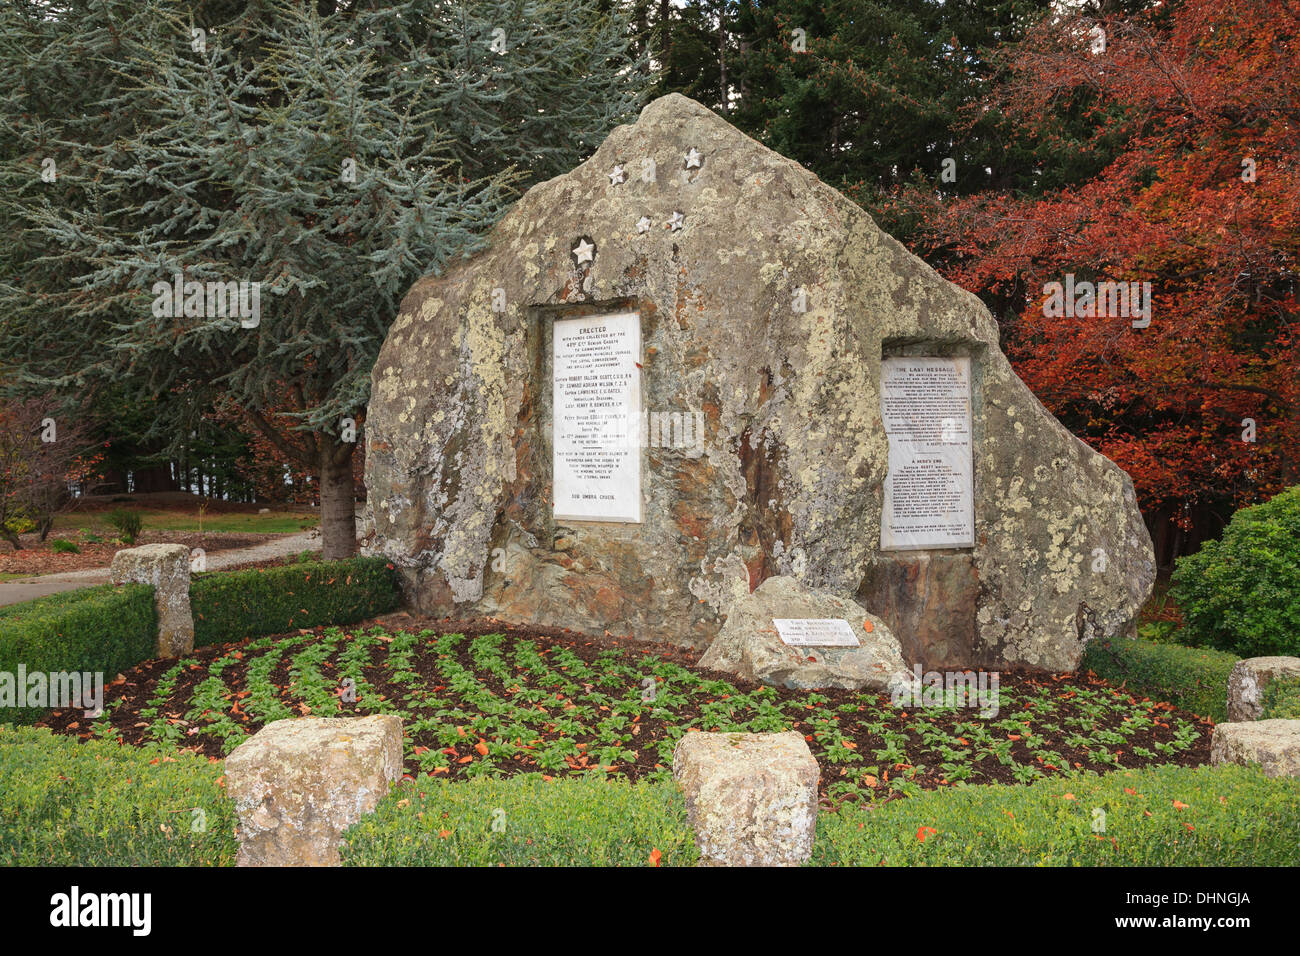 Denkmal-Rock bis Captain Robert Falcon Scott und Männer auf Antarktis-Expedition. Botanische Gärten, Queenstown, Otago, Neuseeland Stockfoto